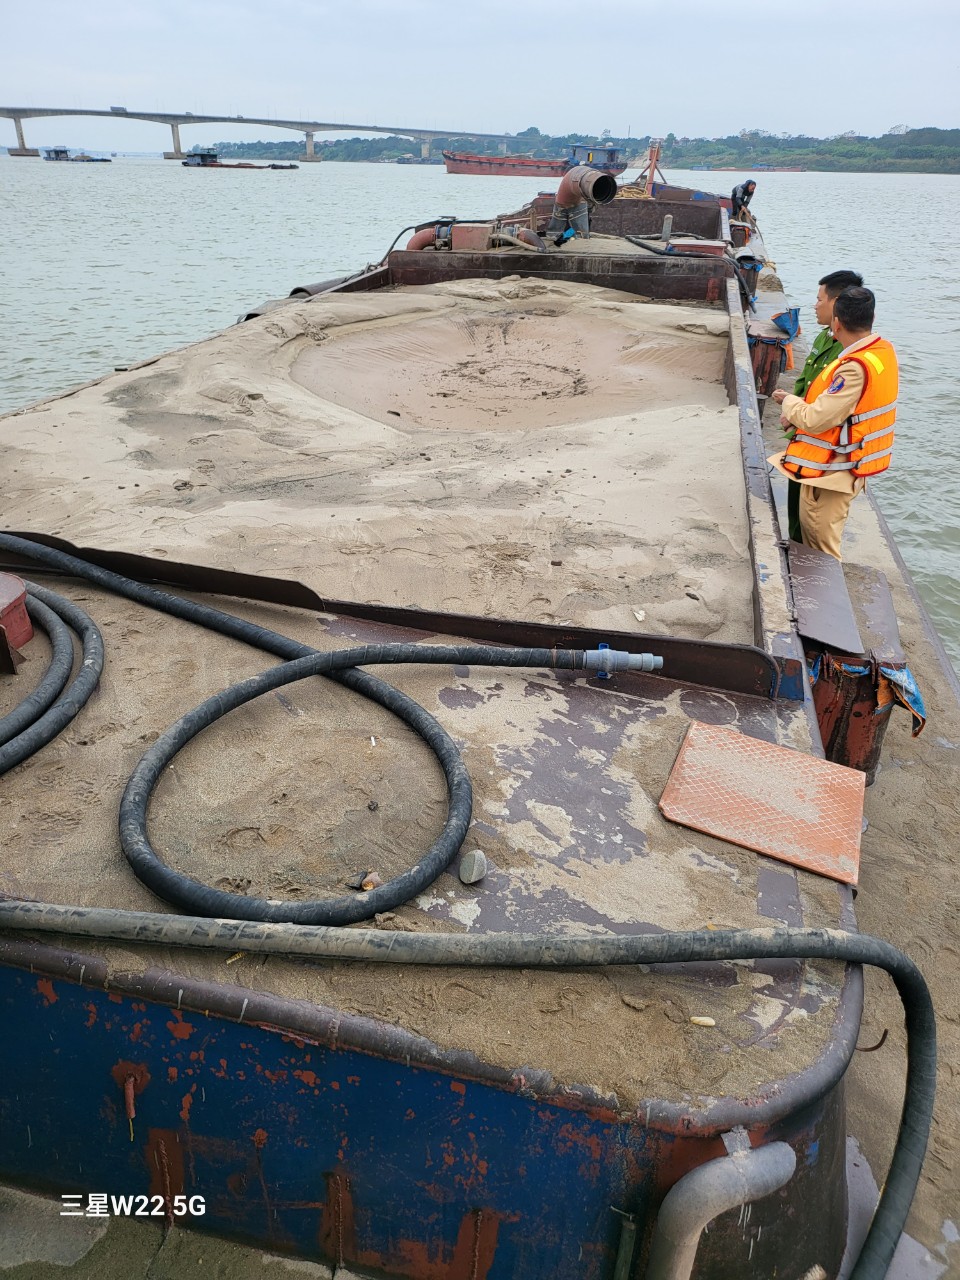 Cục CSGT bắt quả tang tàu bơm hút cát trái phép, thu giữ hơn 100 khối cát- Ảnh 1.